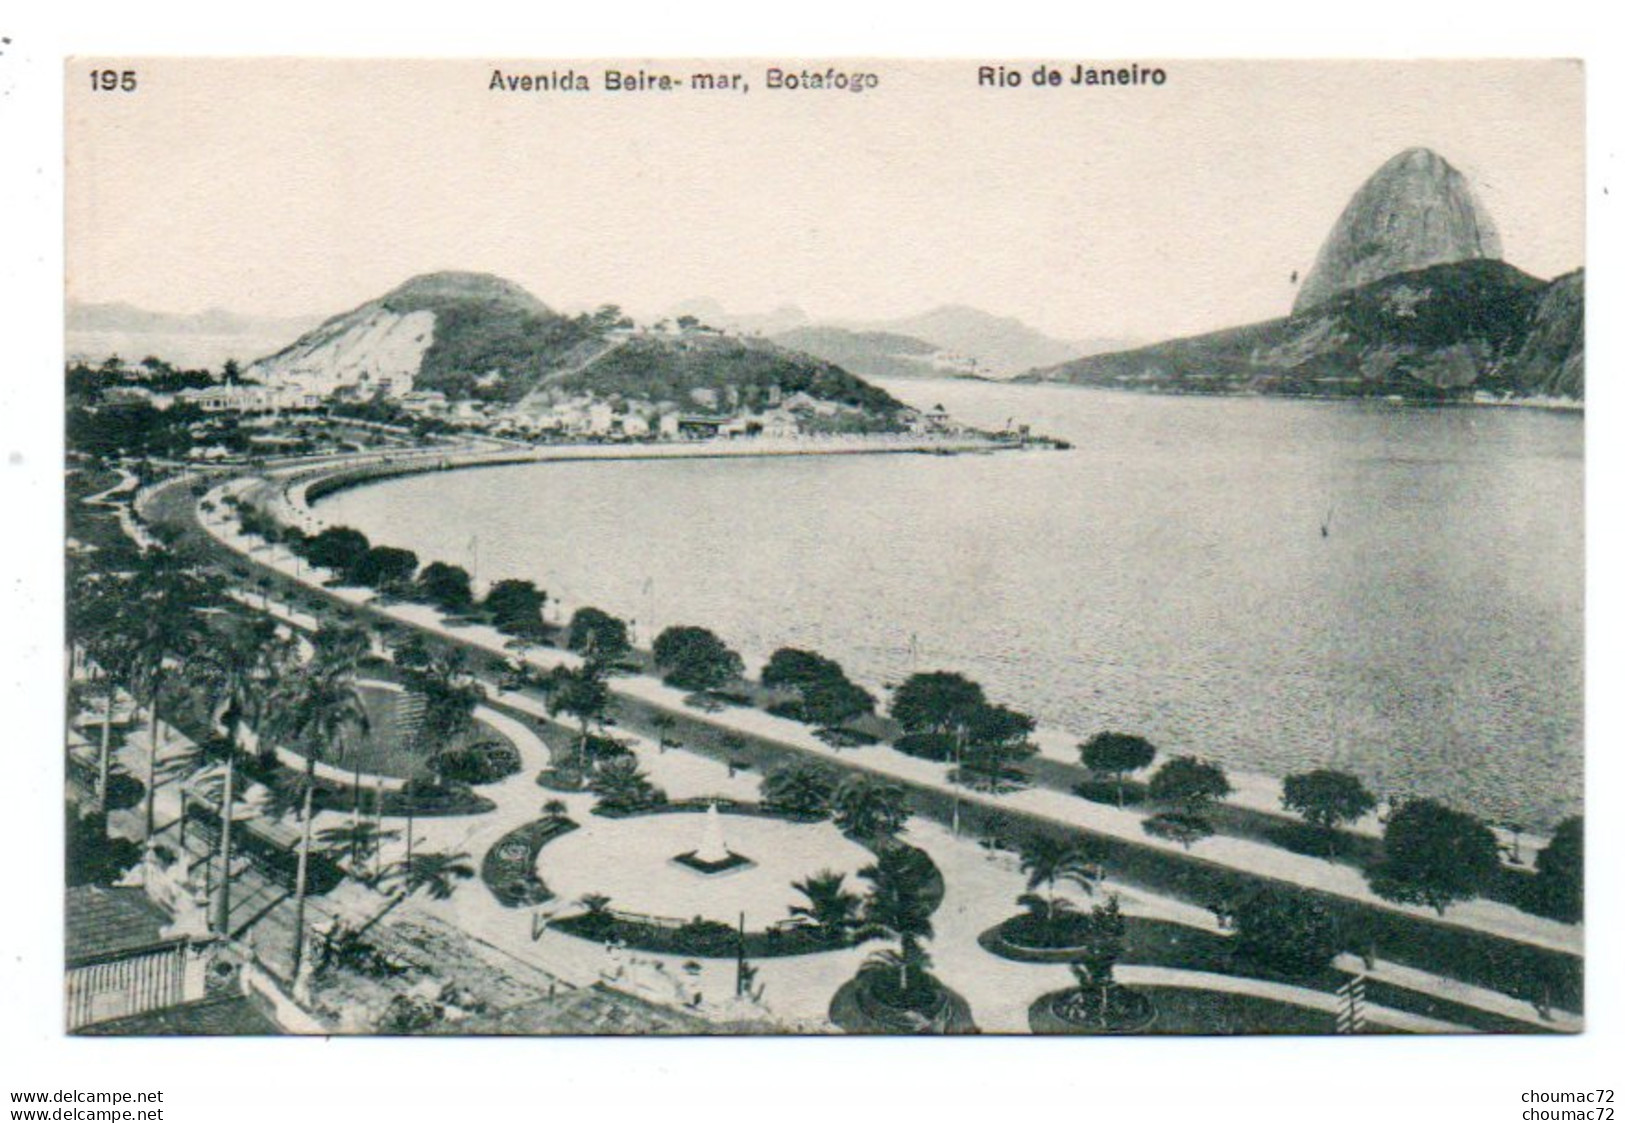 (Brésil) 142, Rio De Janeiro, A Ribbiro 195, Avenida Beira-mar, Botafogo - Rio De Janeiro